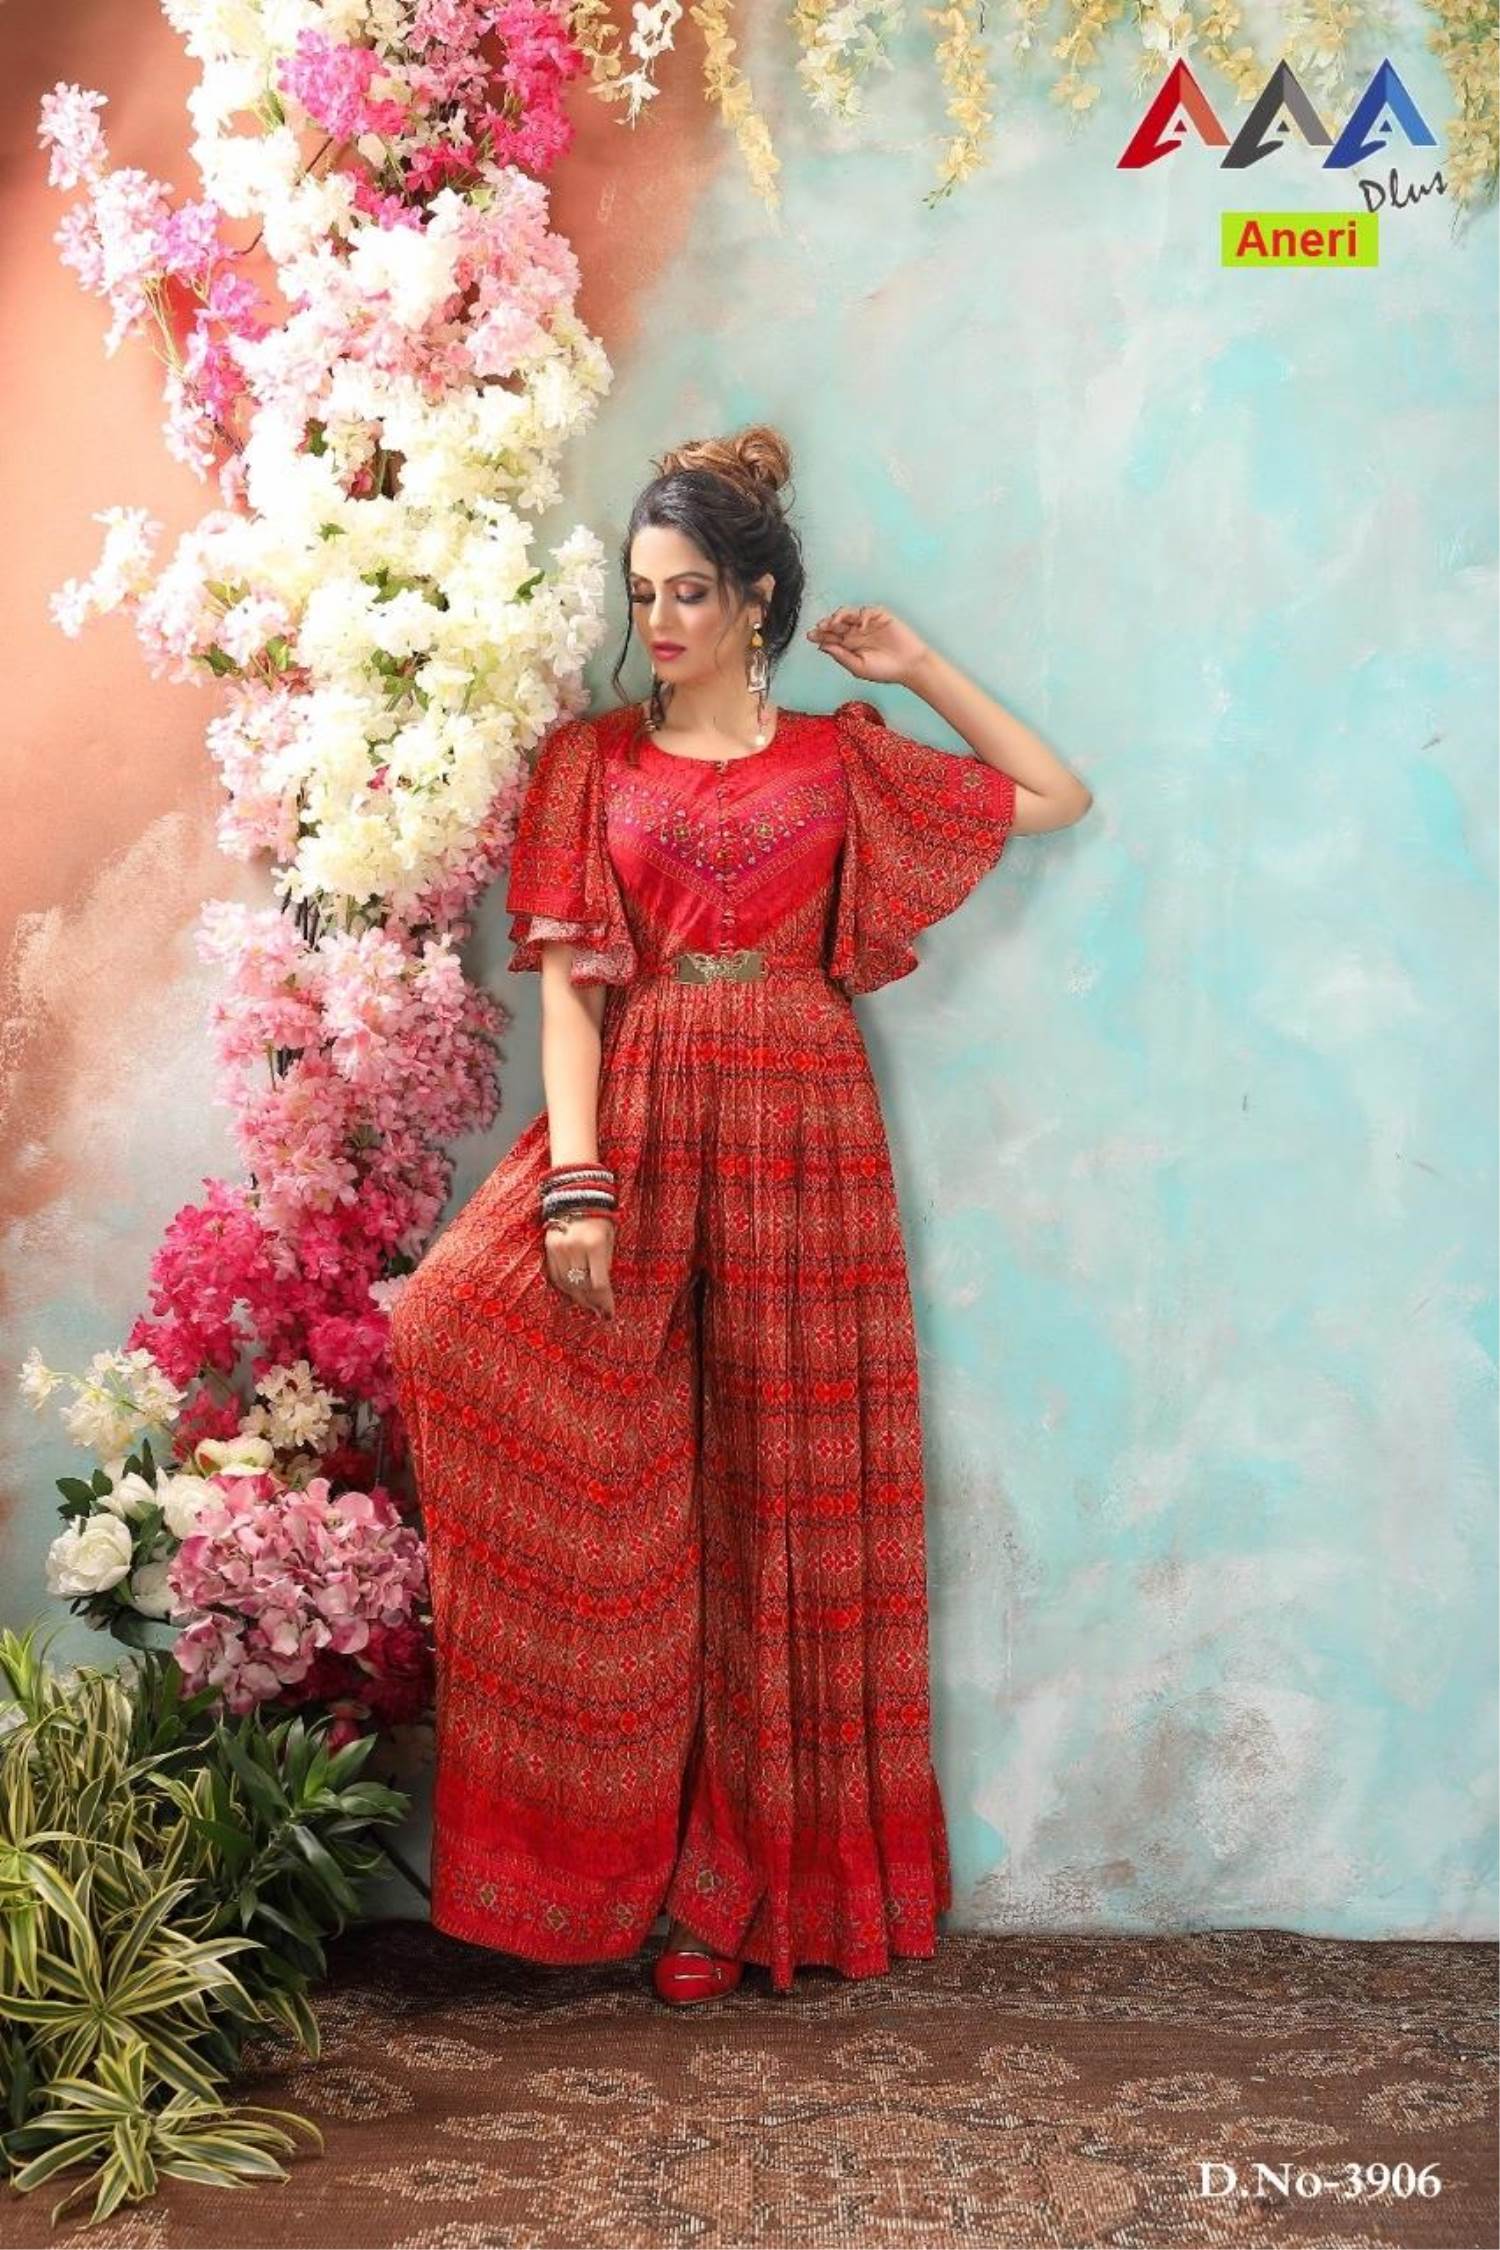 Designer Indo western dresses for Women - YouTube